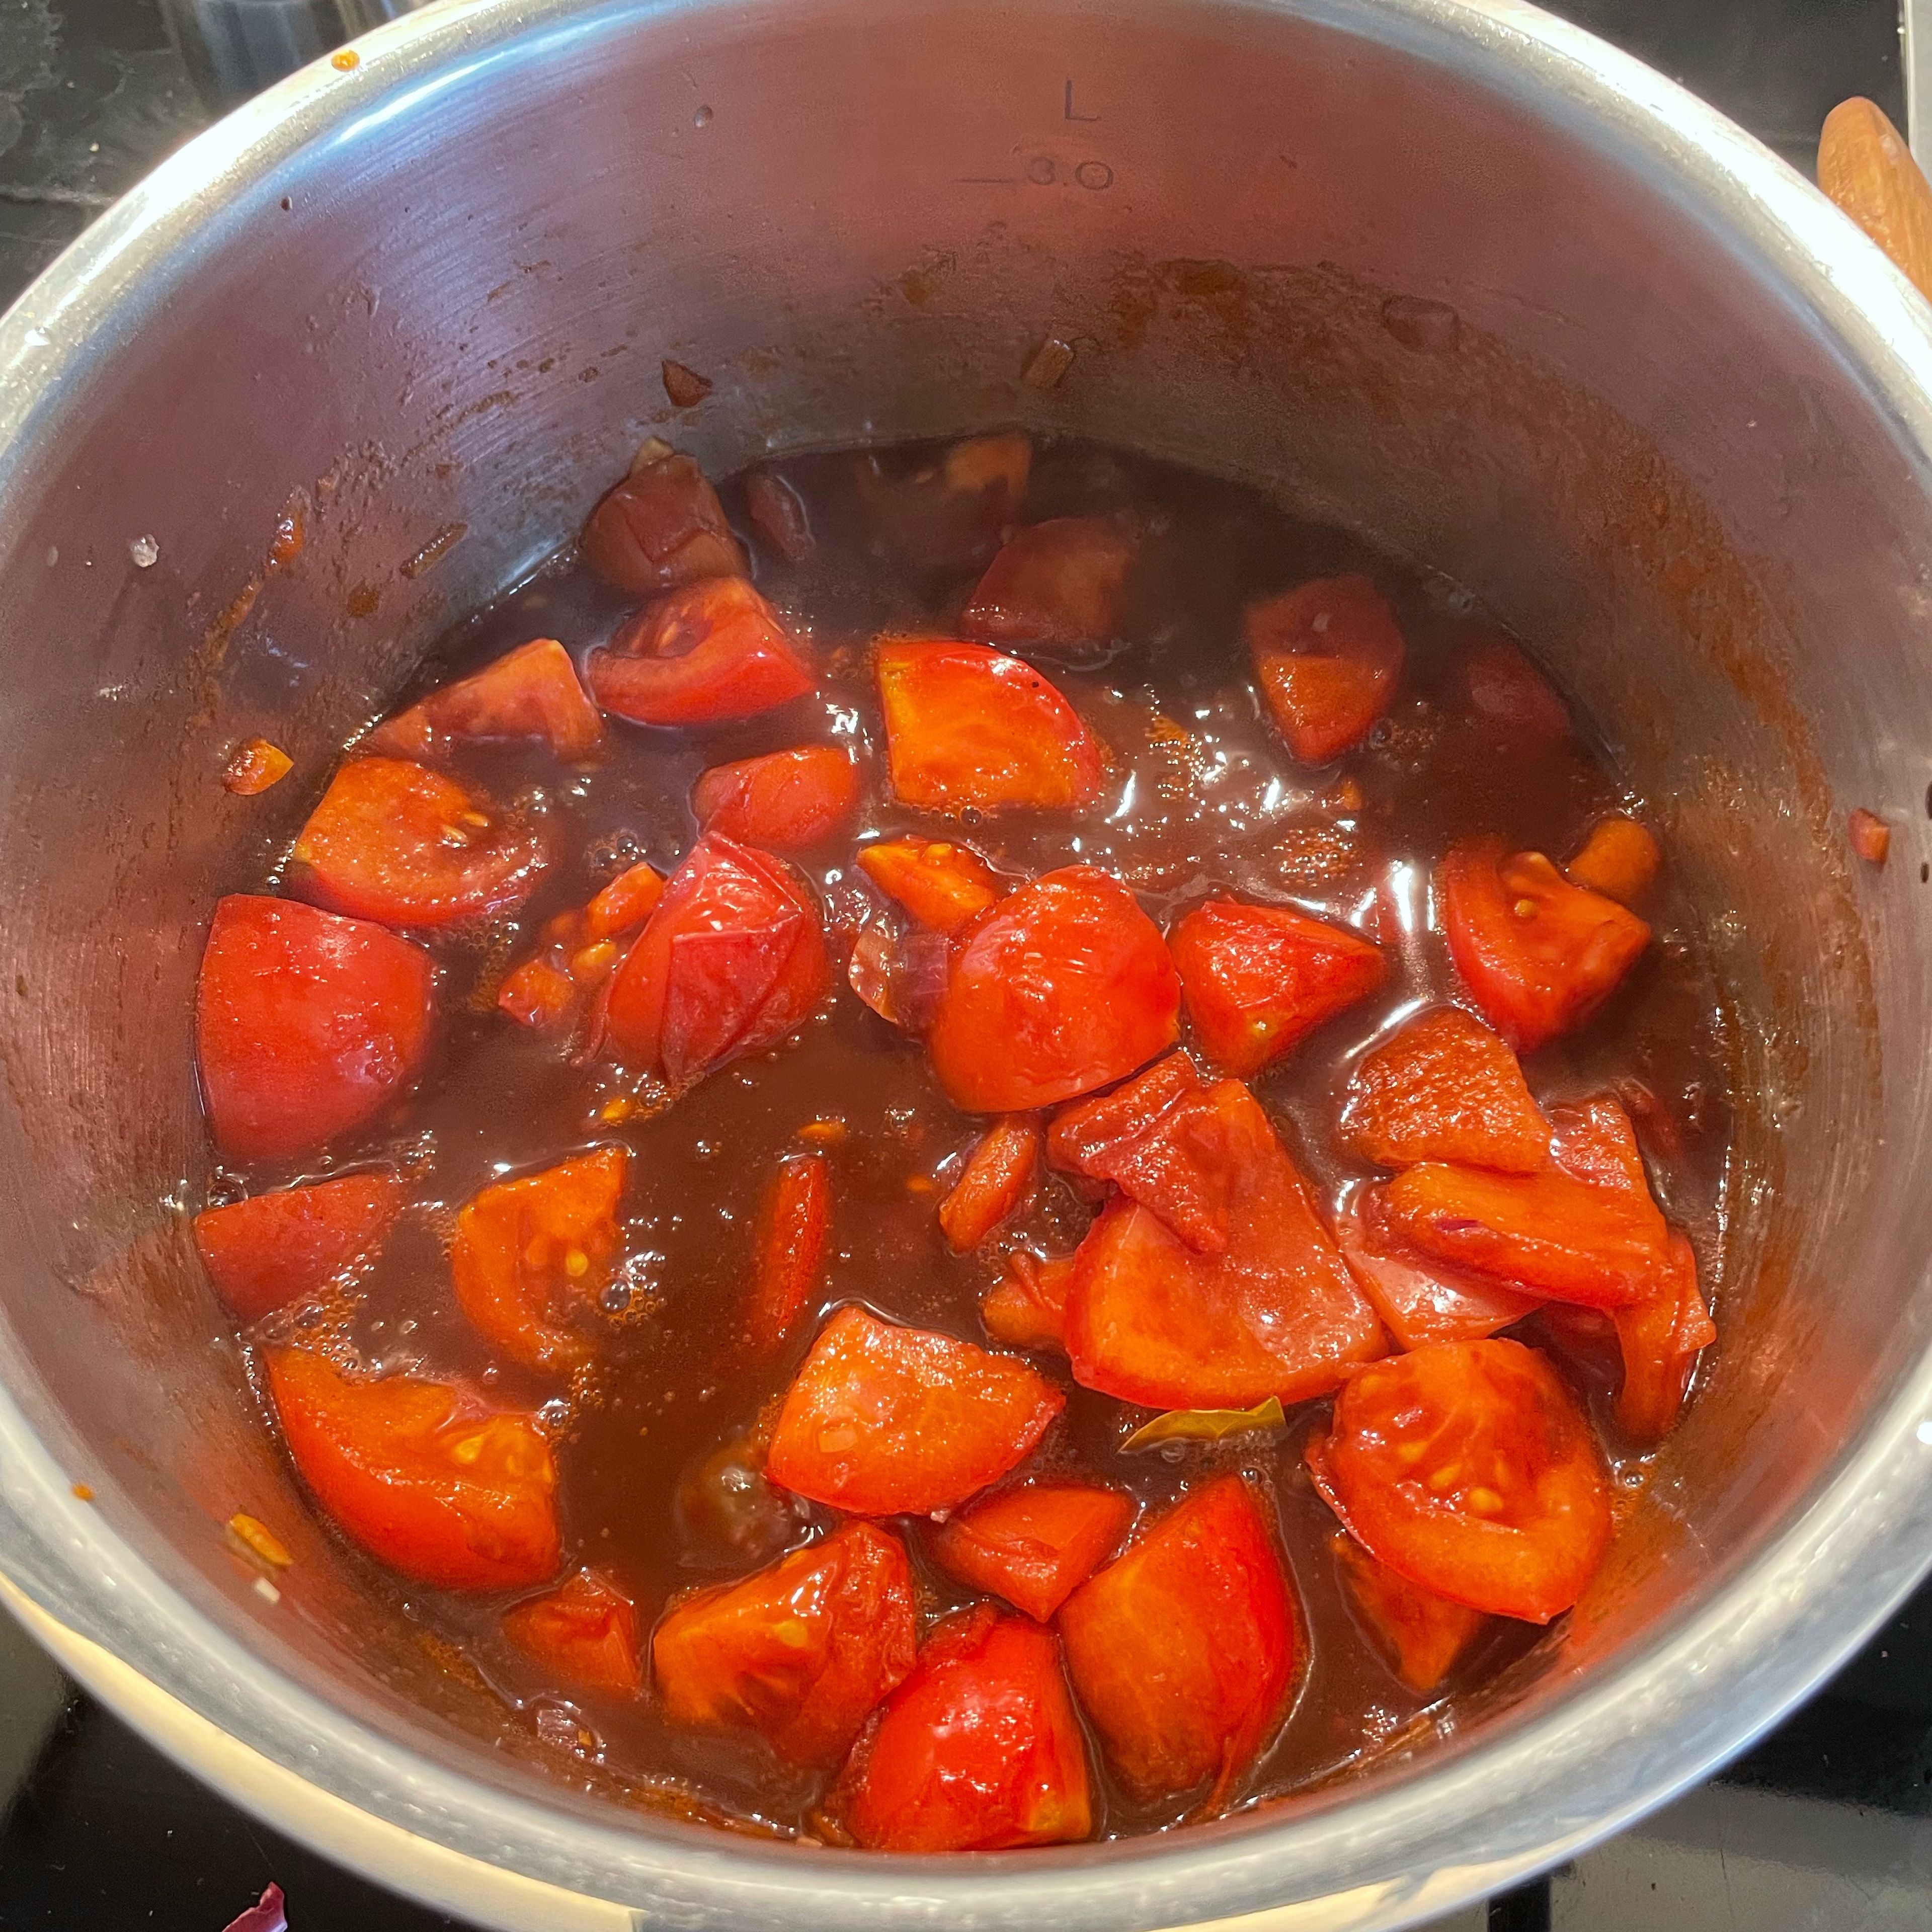 Jetzt Tomatenmark hinzufügen und gut unterrühren. Dann die Tomaten und die restlichen Zutaten in den Topf geben und aufkochen lassen. Gut durchrühren und bei leicht geöffneten Deckel ca. 1 Stunde einkochen lassen. Entweder die Maße jetzt passieren oder mit dem Mixer pürieren. Das Ketchup jetzt noch nach Belieben nachwürzen und weiter einkochen bis die gewünschte Konsistenz erreicht ist. Zum Schluss abfüllen und fertig. Alternativ zum Honig geht auch Agavensirup.